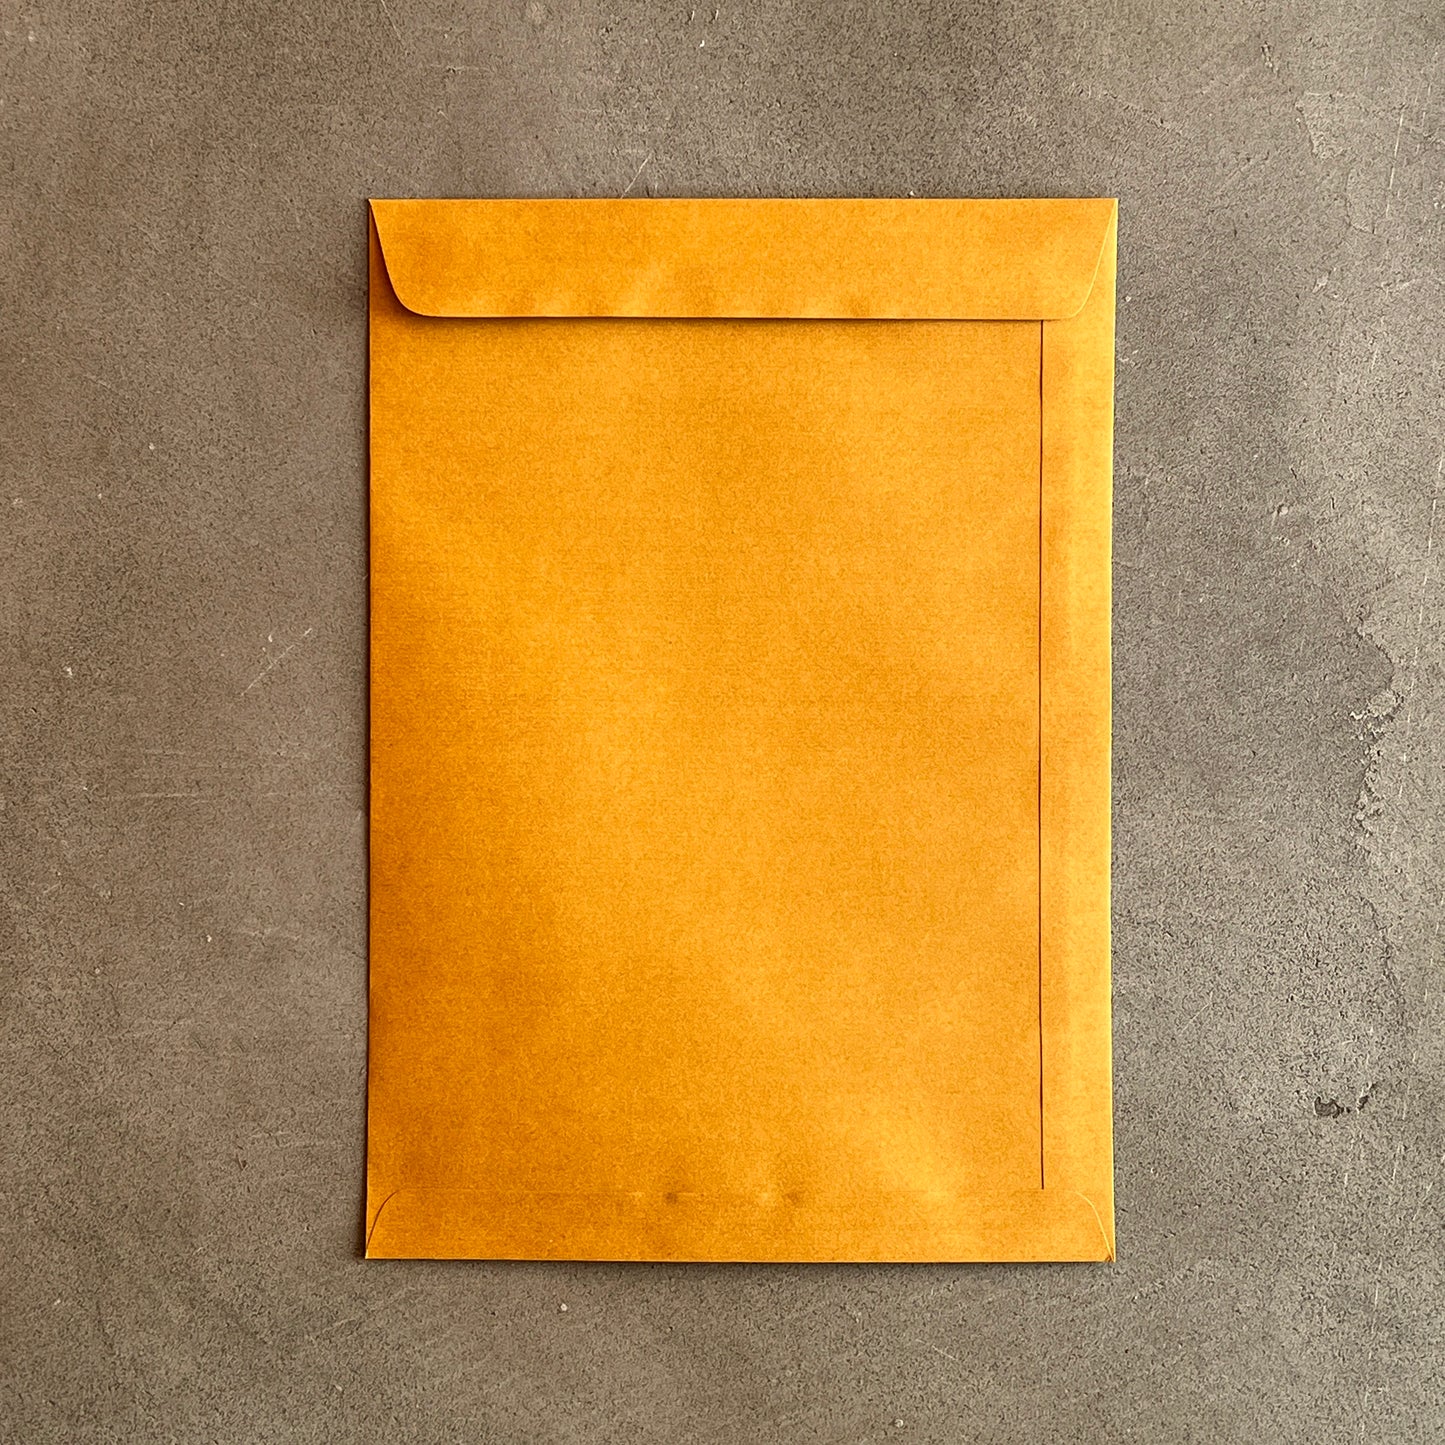 【メール便不可】タイのオレンジ封筒 A4